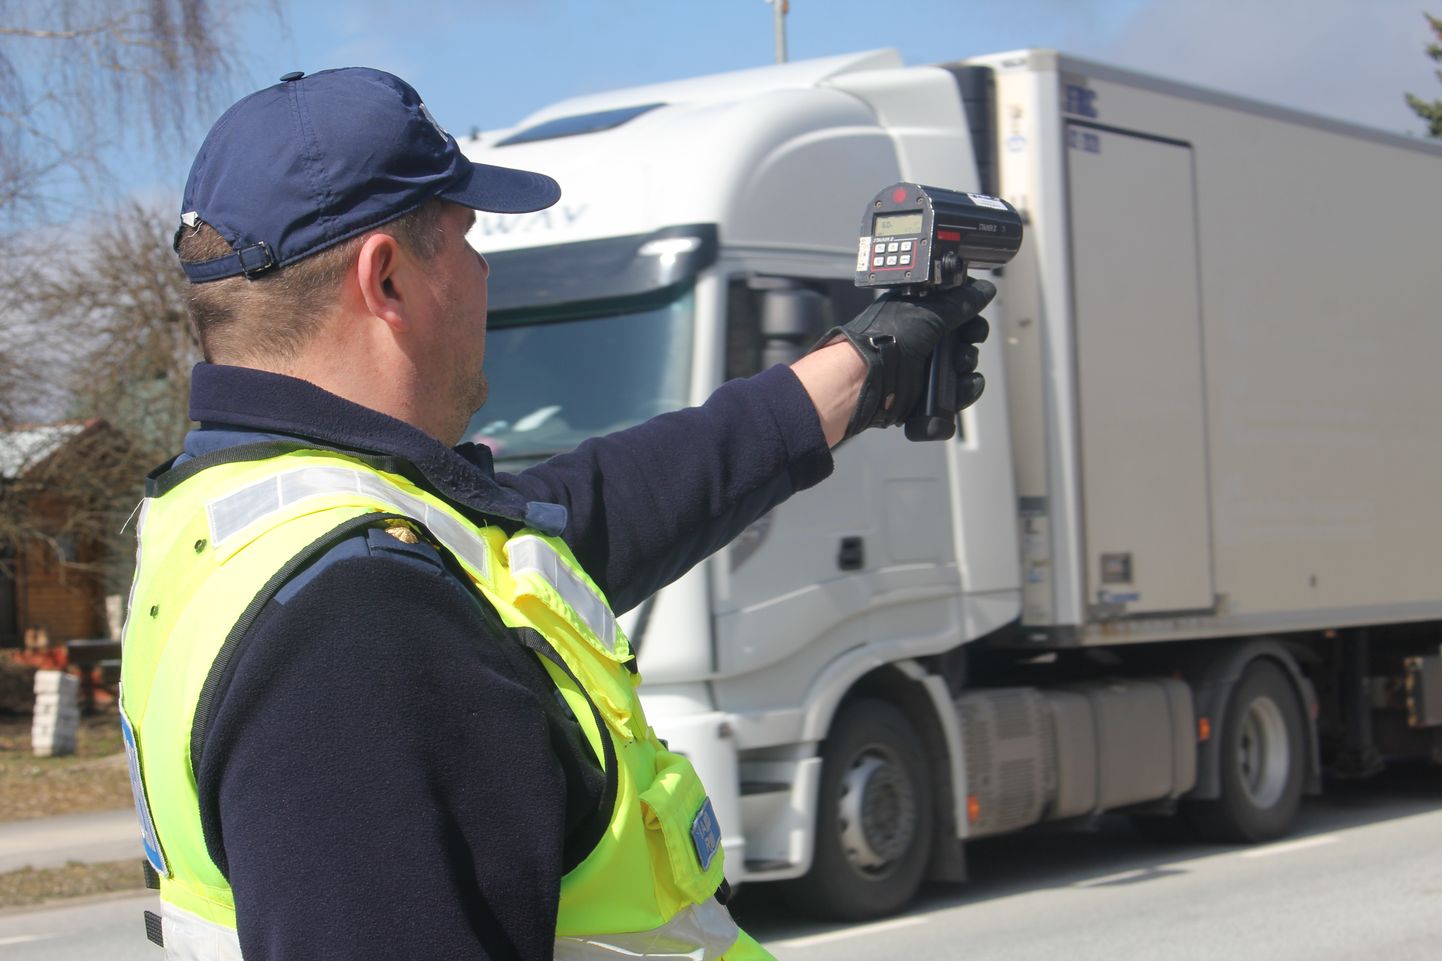 Politsei keskendub täna ja homme Tallinna ja Tartu vahelisel maanteel sõidukite kiiruse mõõtmisele.